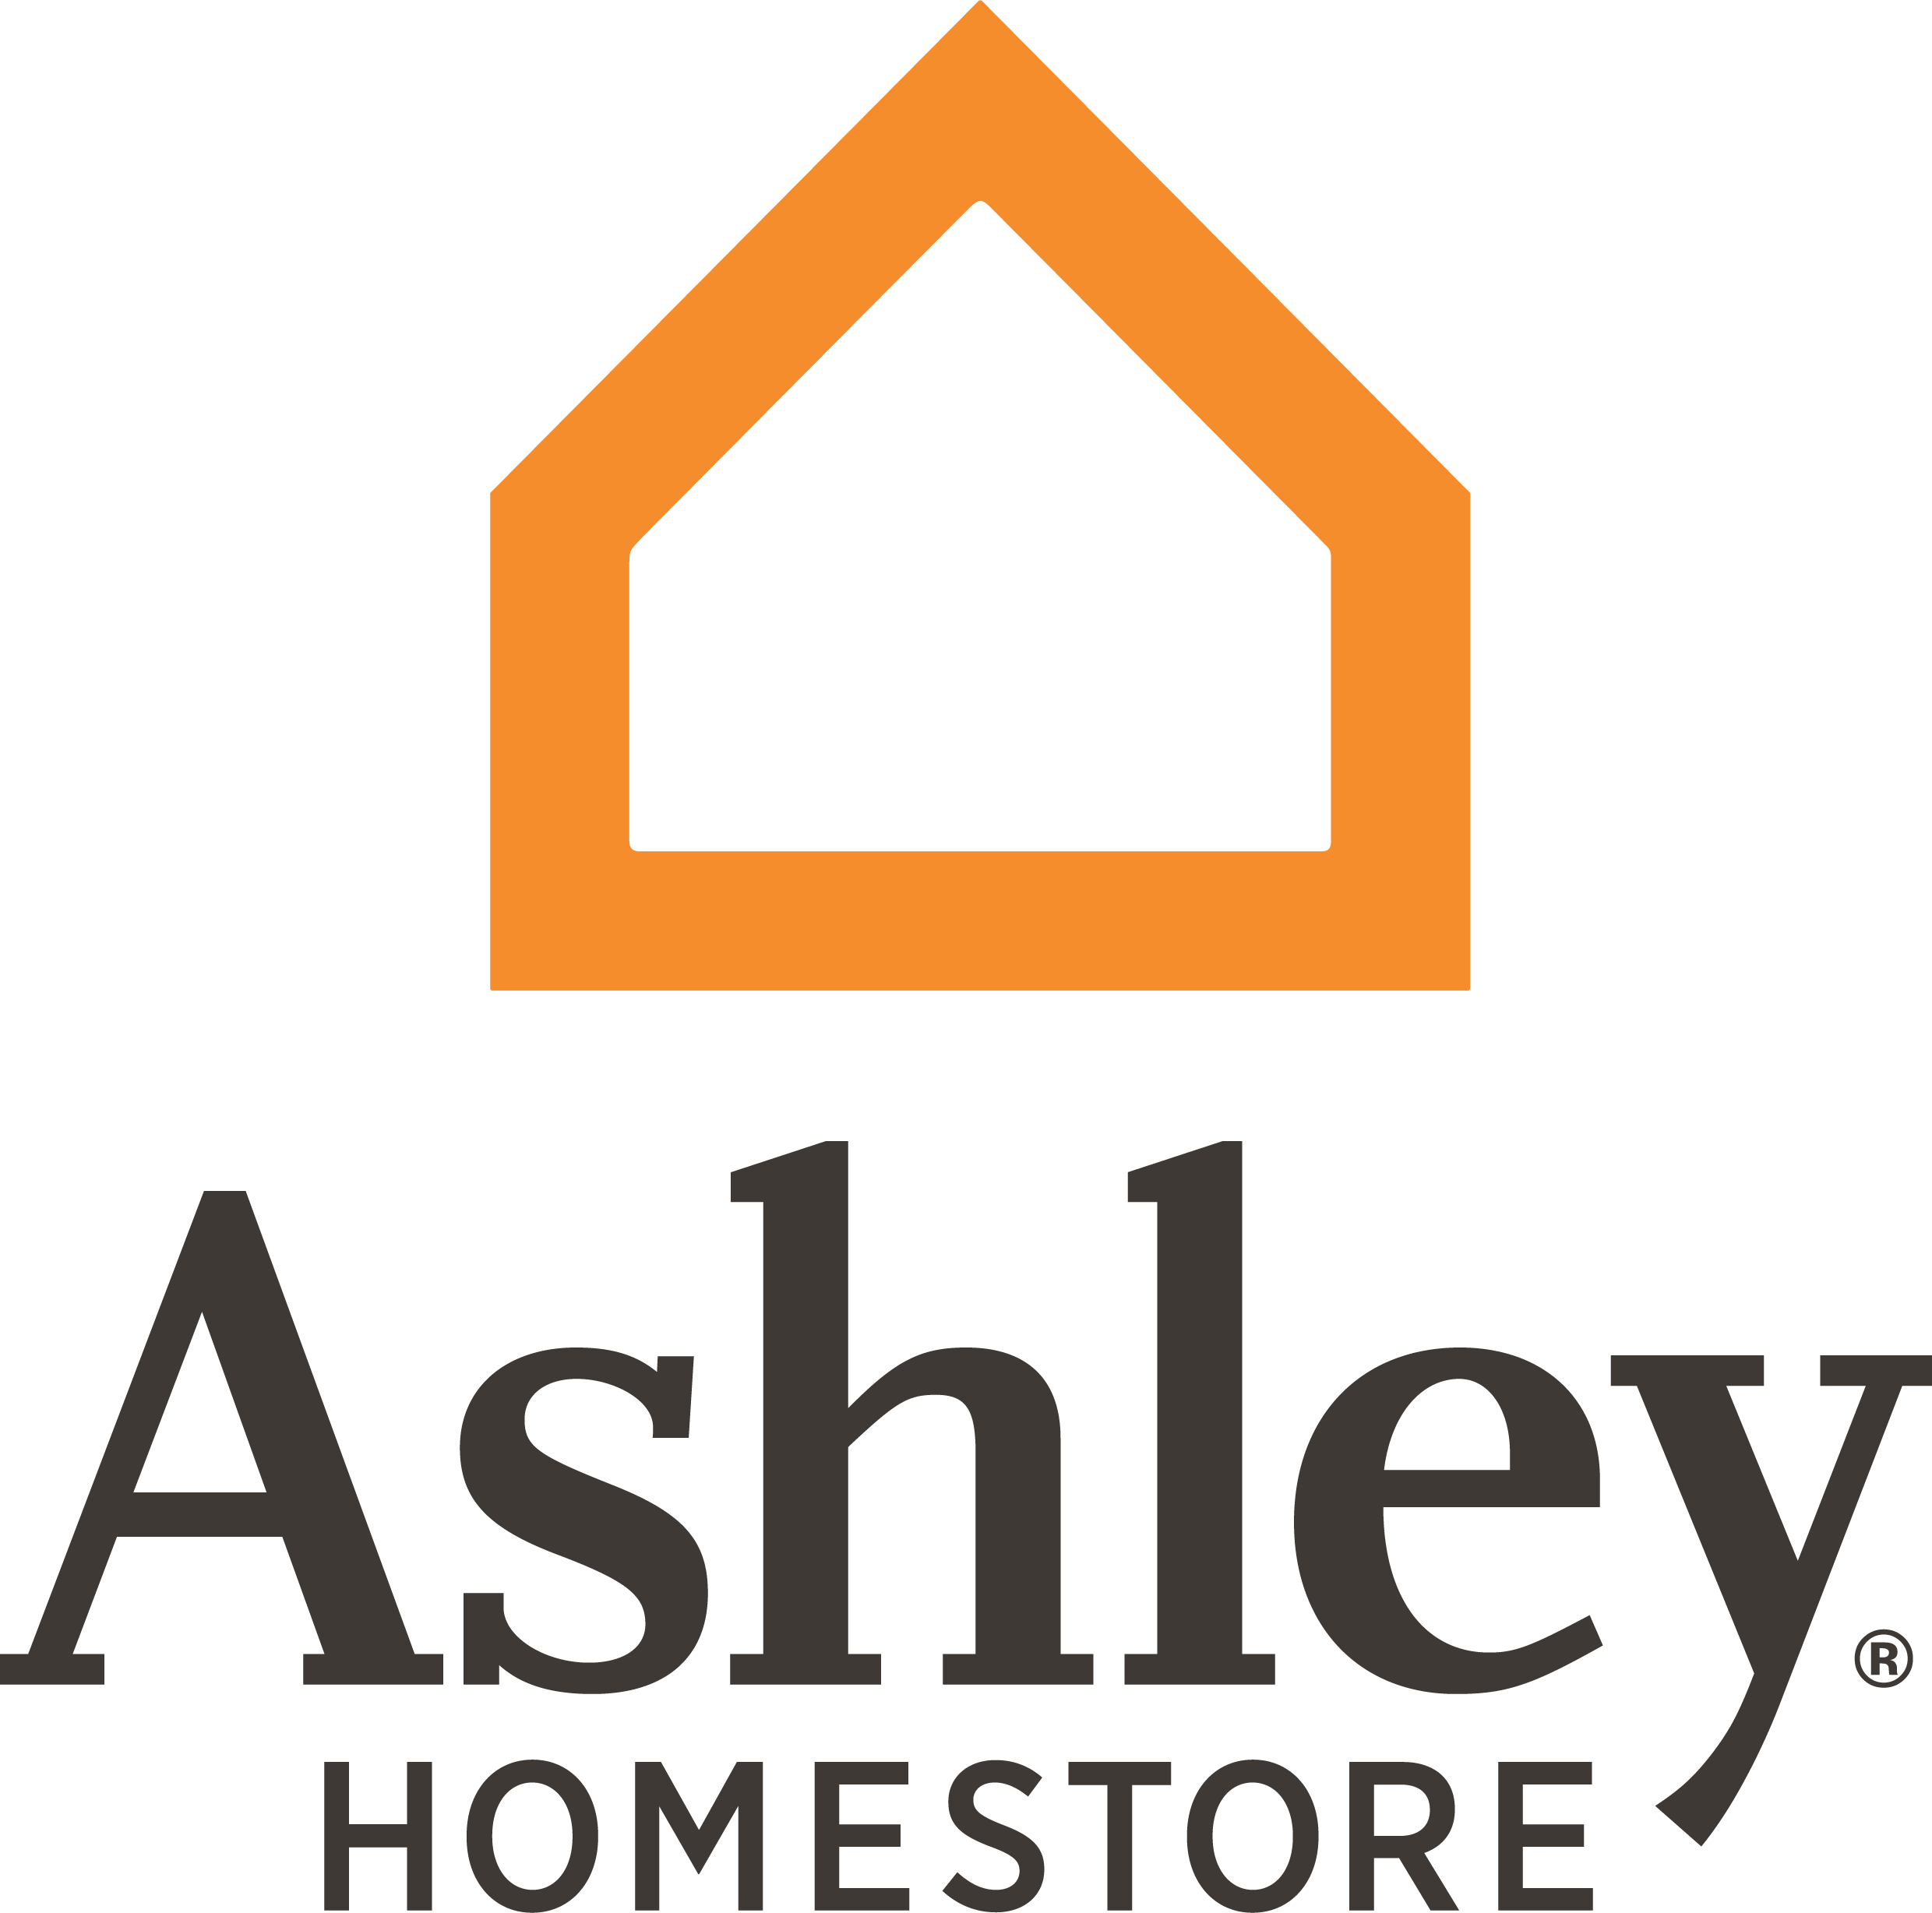 Ashley HomeStore – Ashley HomeStore